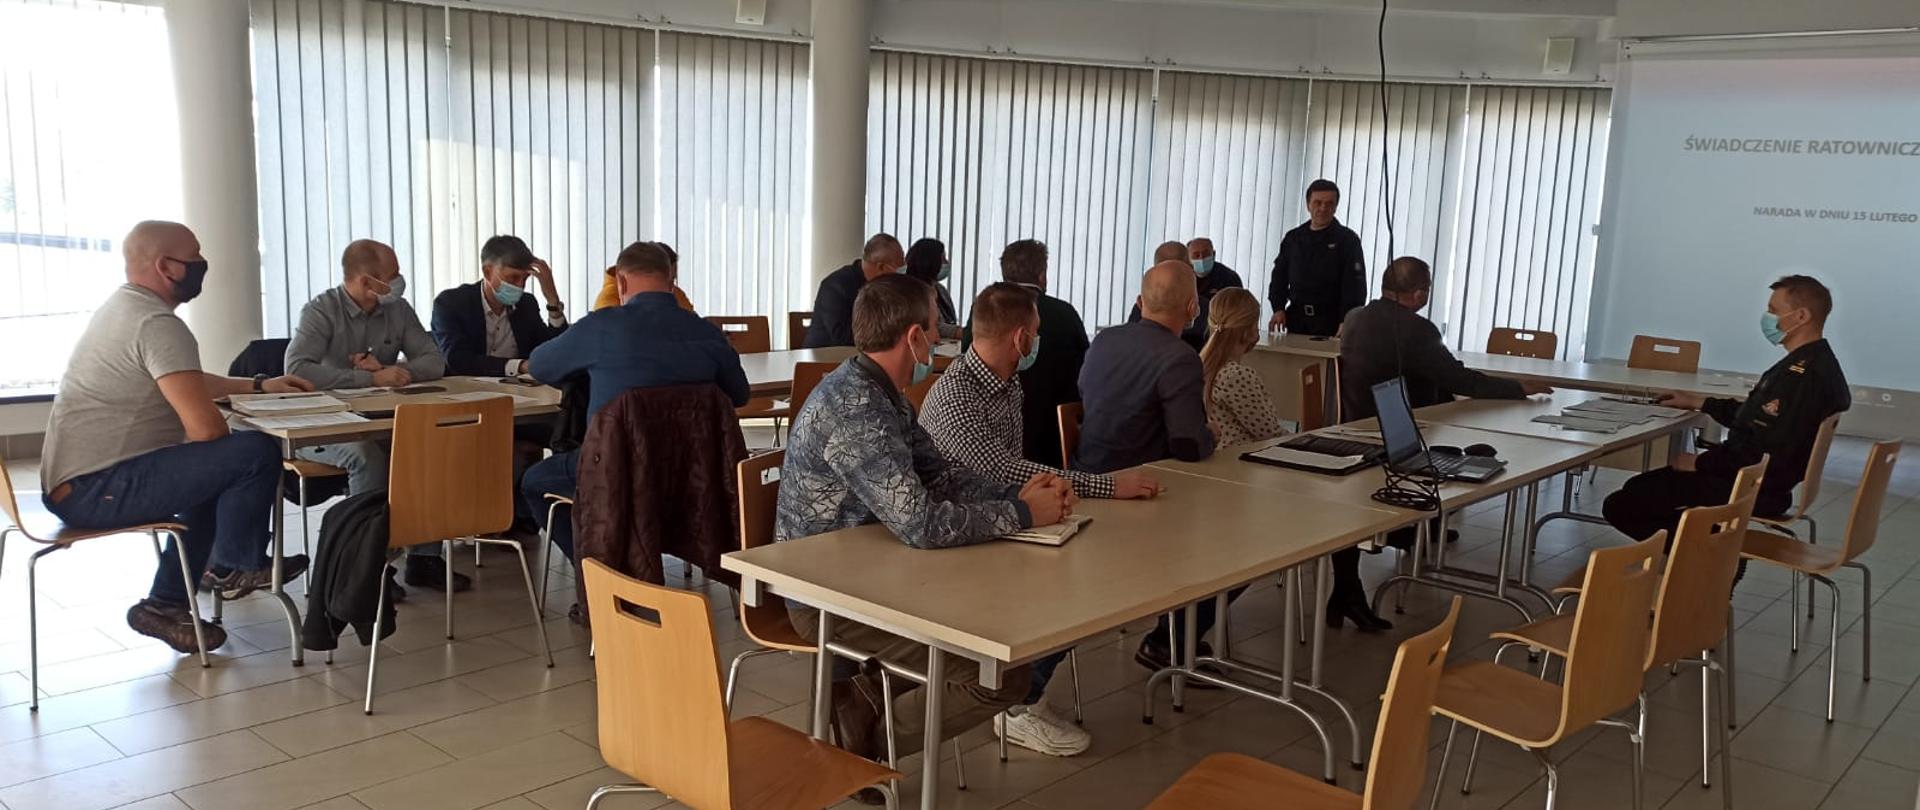 Zdjęcie przedstawia pracowników gminy oraz strażaków, którzy siedzą przy stolikach i słuchają wystąpienia komendanta powiatowego dotyczącego ustawy o OSP. Na drugim planie widać rzutnik i przedstawianą prezentację